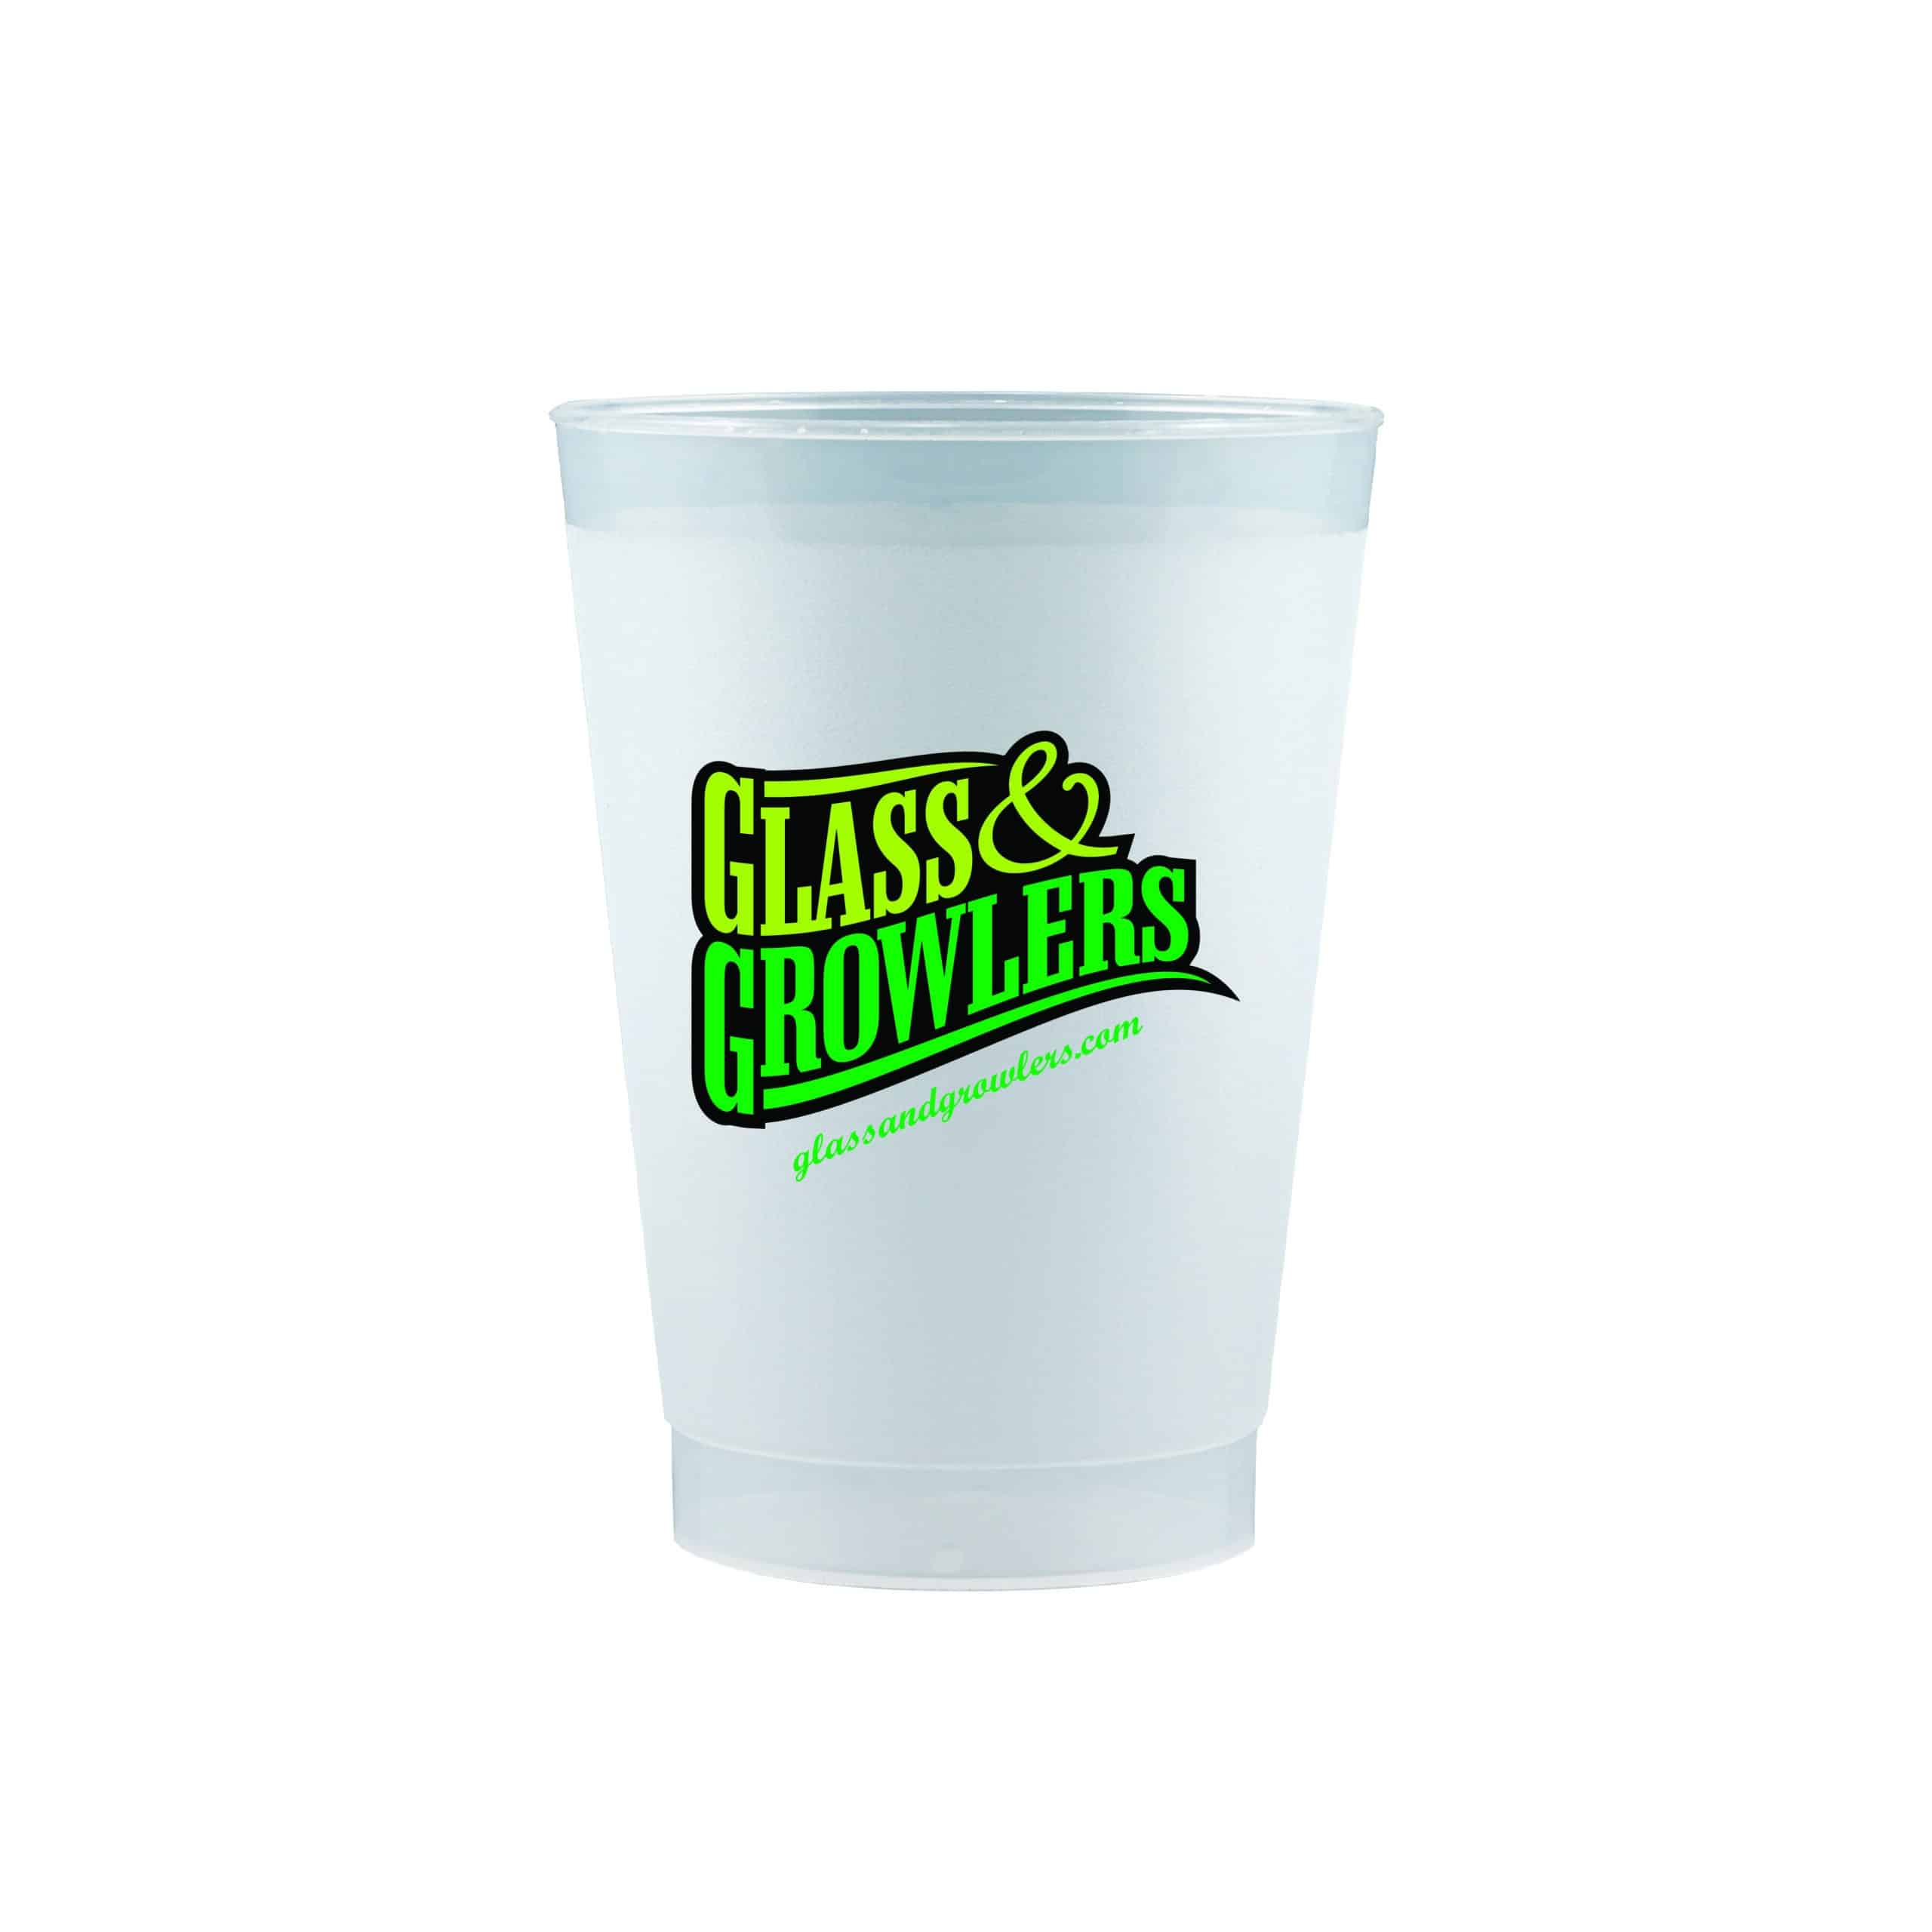 8 oz. Frost Flex Cups - Wholesale Prices